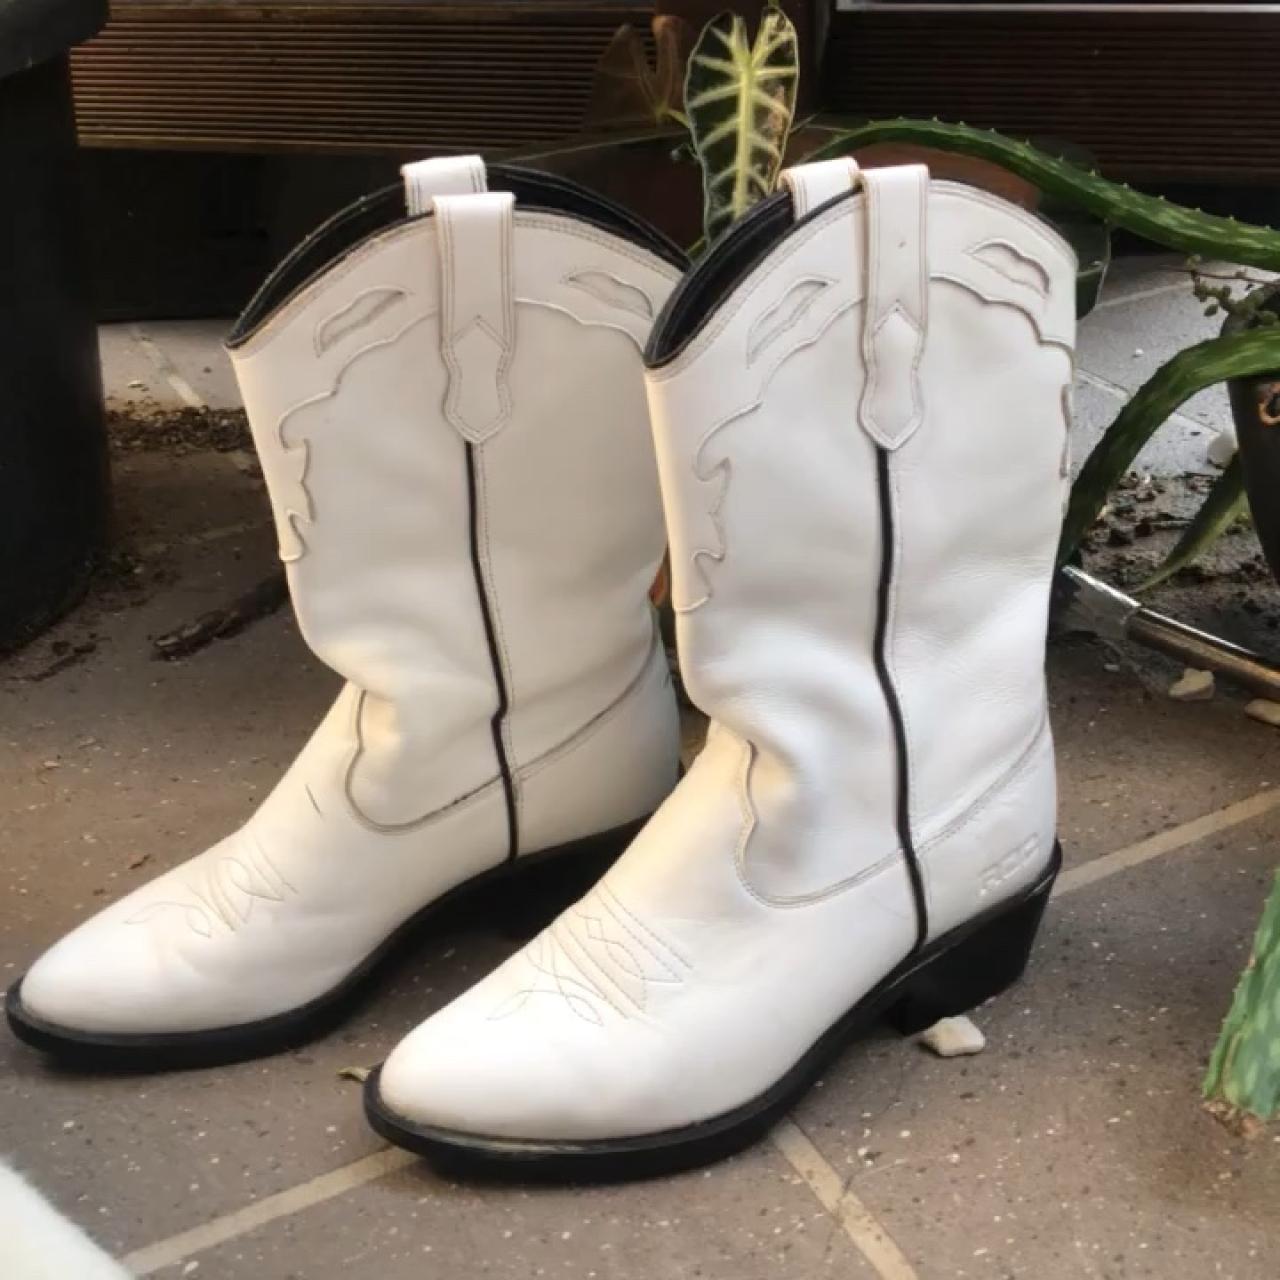 roc boots australia indio boots white